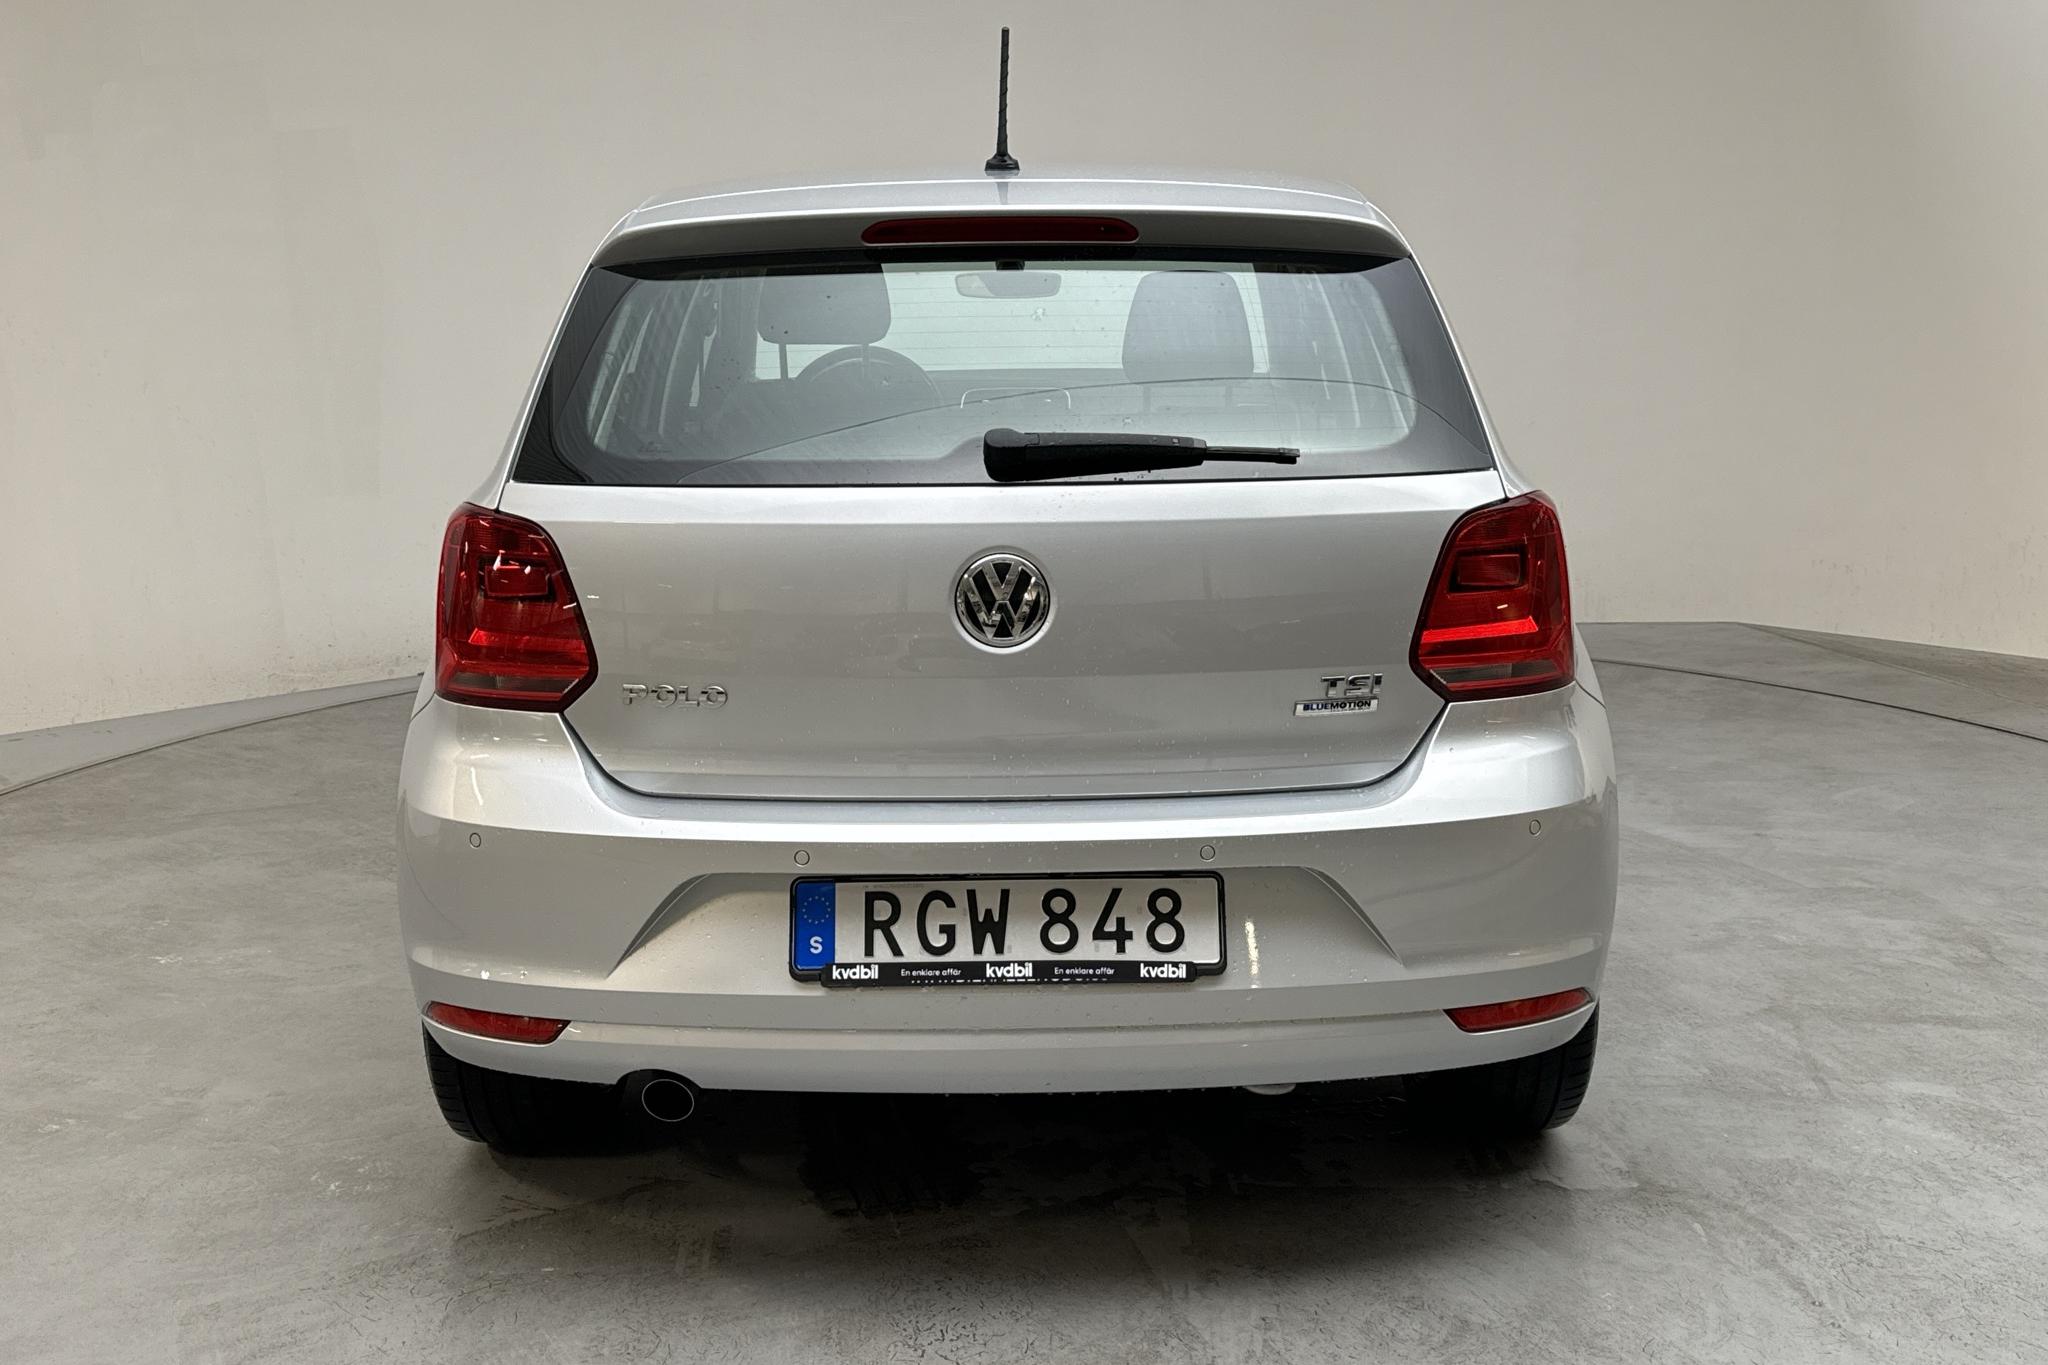 VW Polo 1.2 TSI 5dr (90hk) - 7 840 mil - Automat - silver - 2017